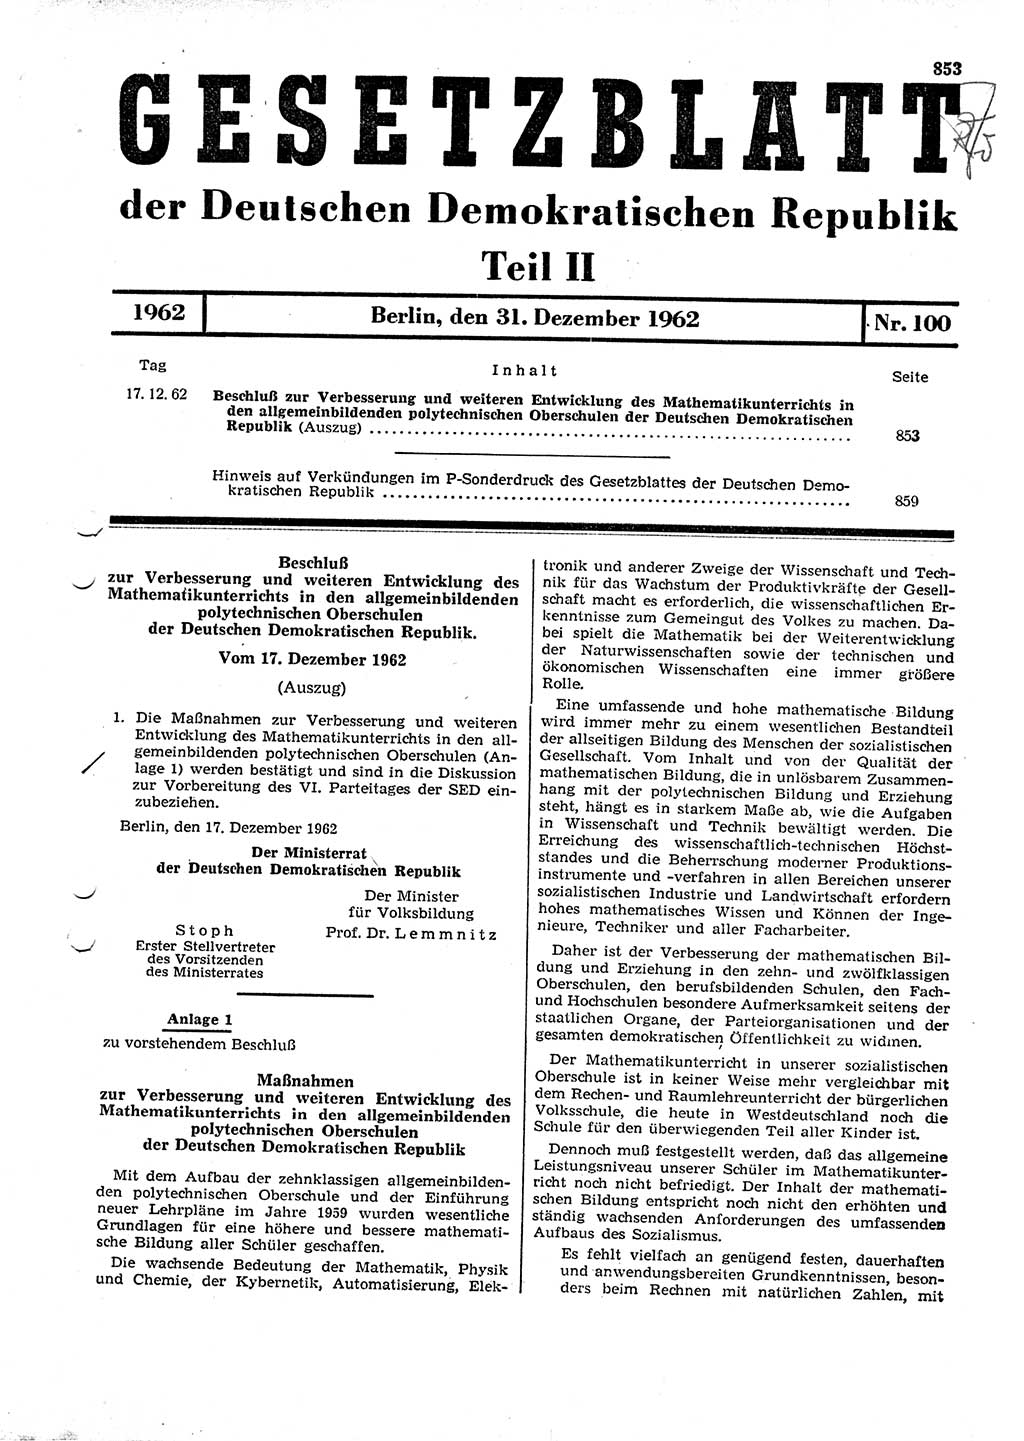 Gesetzblatt (GBl.) der Deutschen Demokratischen Republik (DDR) Teil ⅠⅠ 1962, Seite 853 (GBl. DDR ⅠⅠ 1962, S. 853)